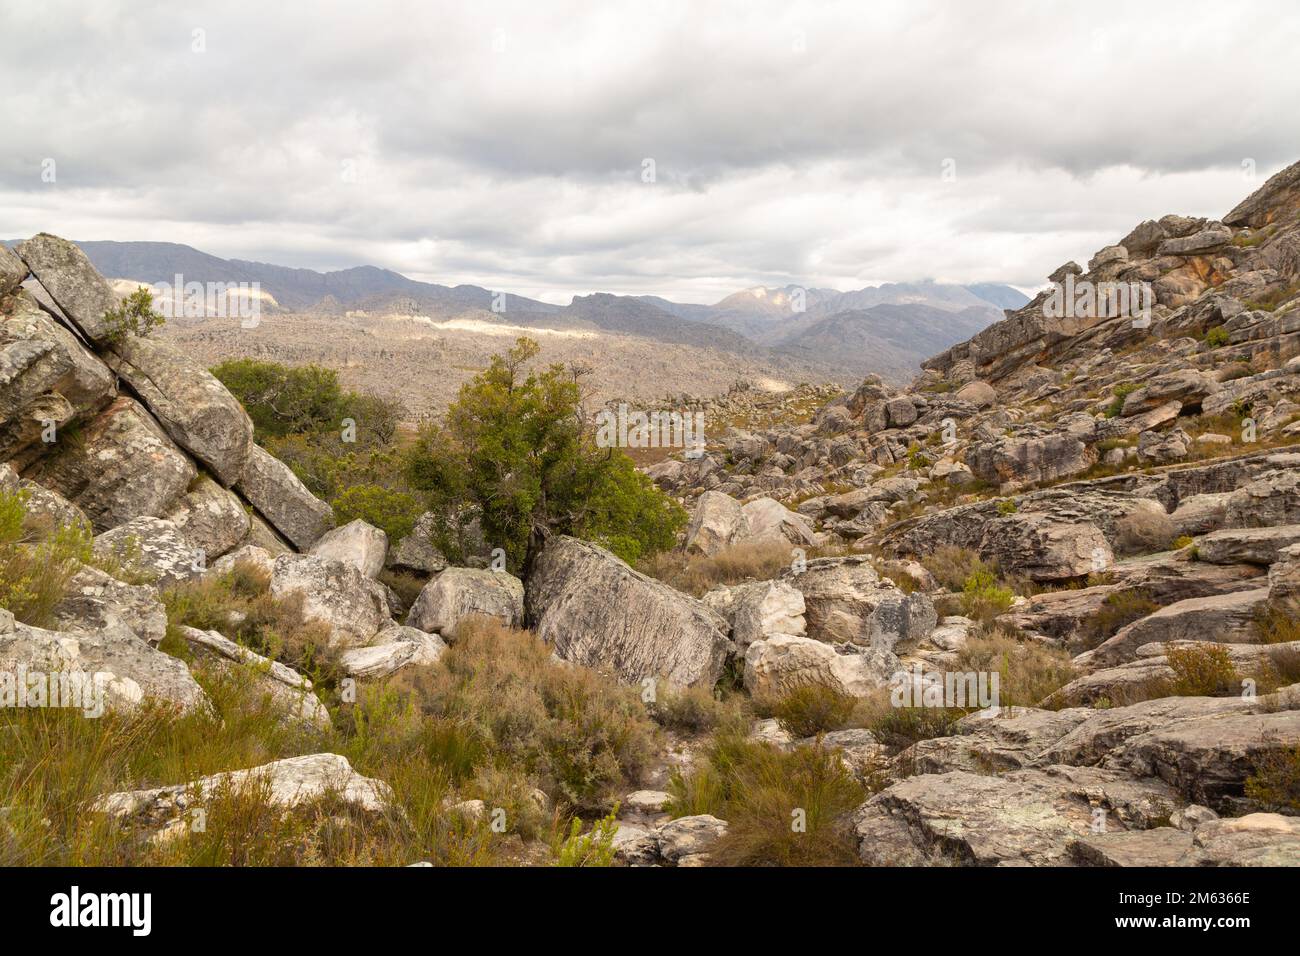 Paysage pierreux près de Tulbagh dans le Cap occidental de l'Afrique du Sud, pris lors d'une randonnée dans les montagnes Banque D'Images